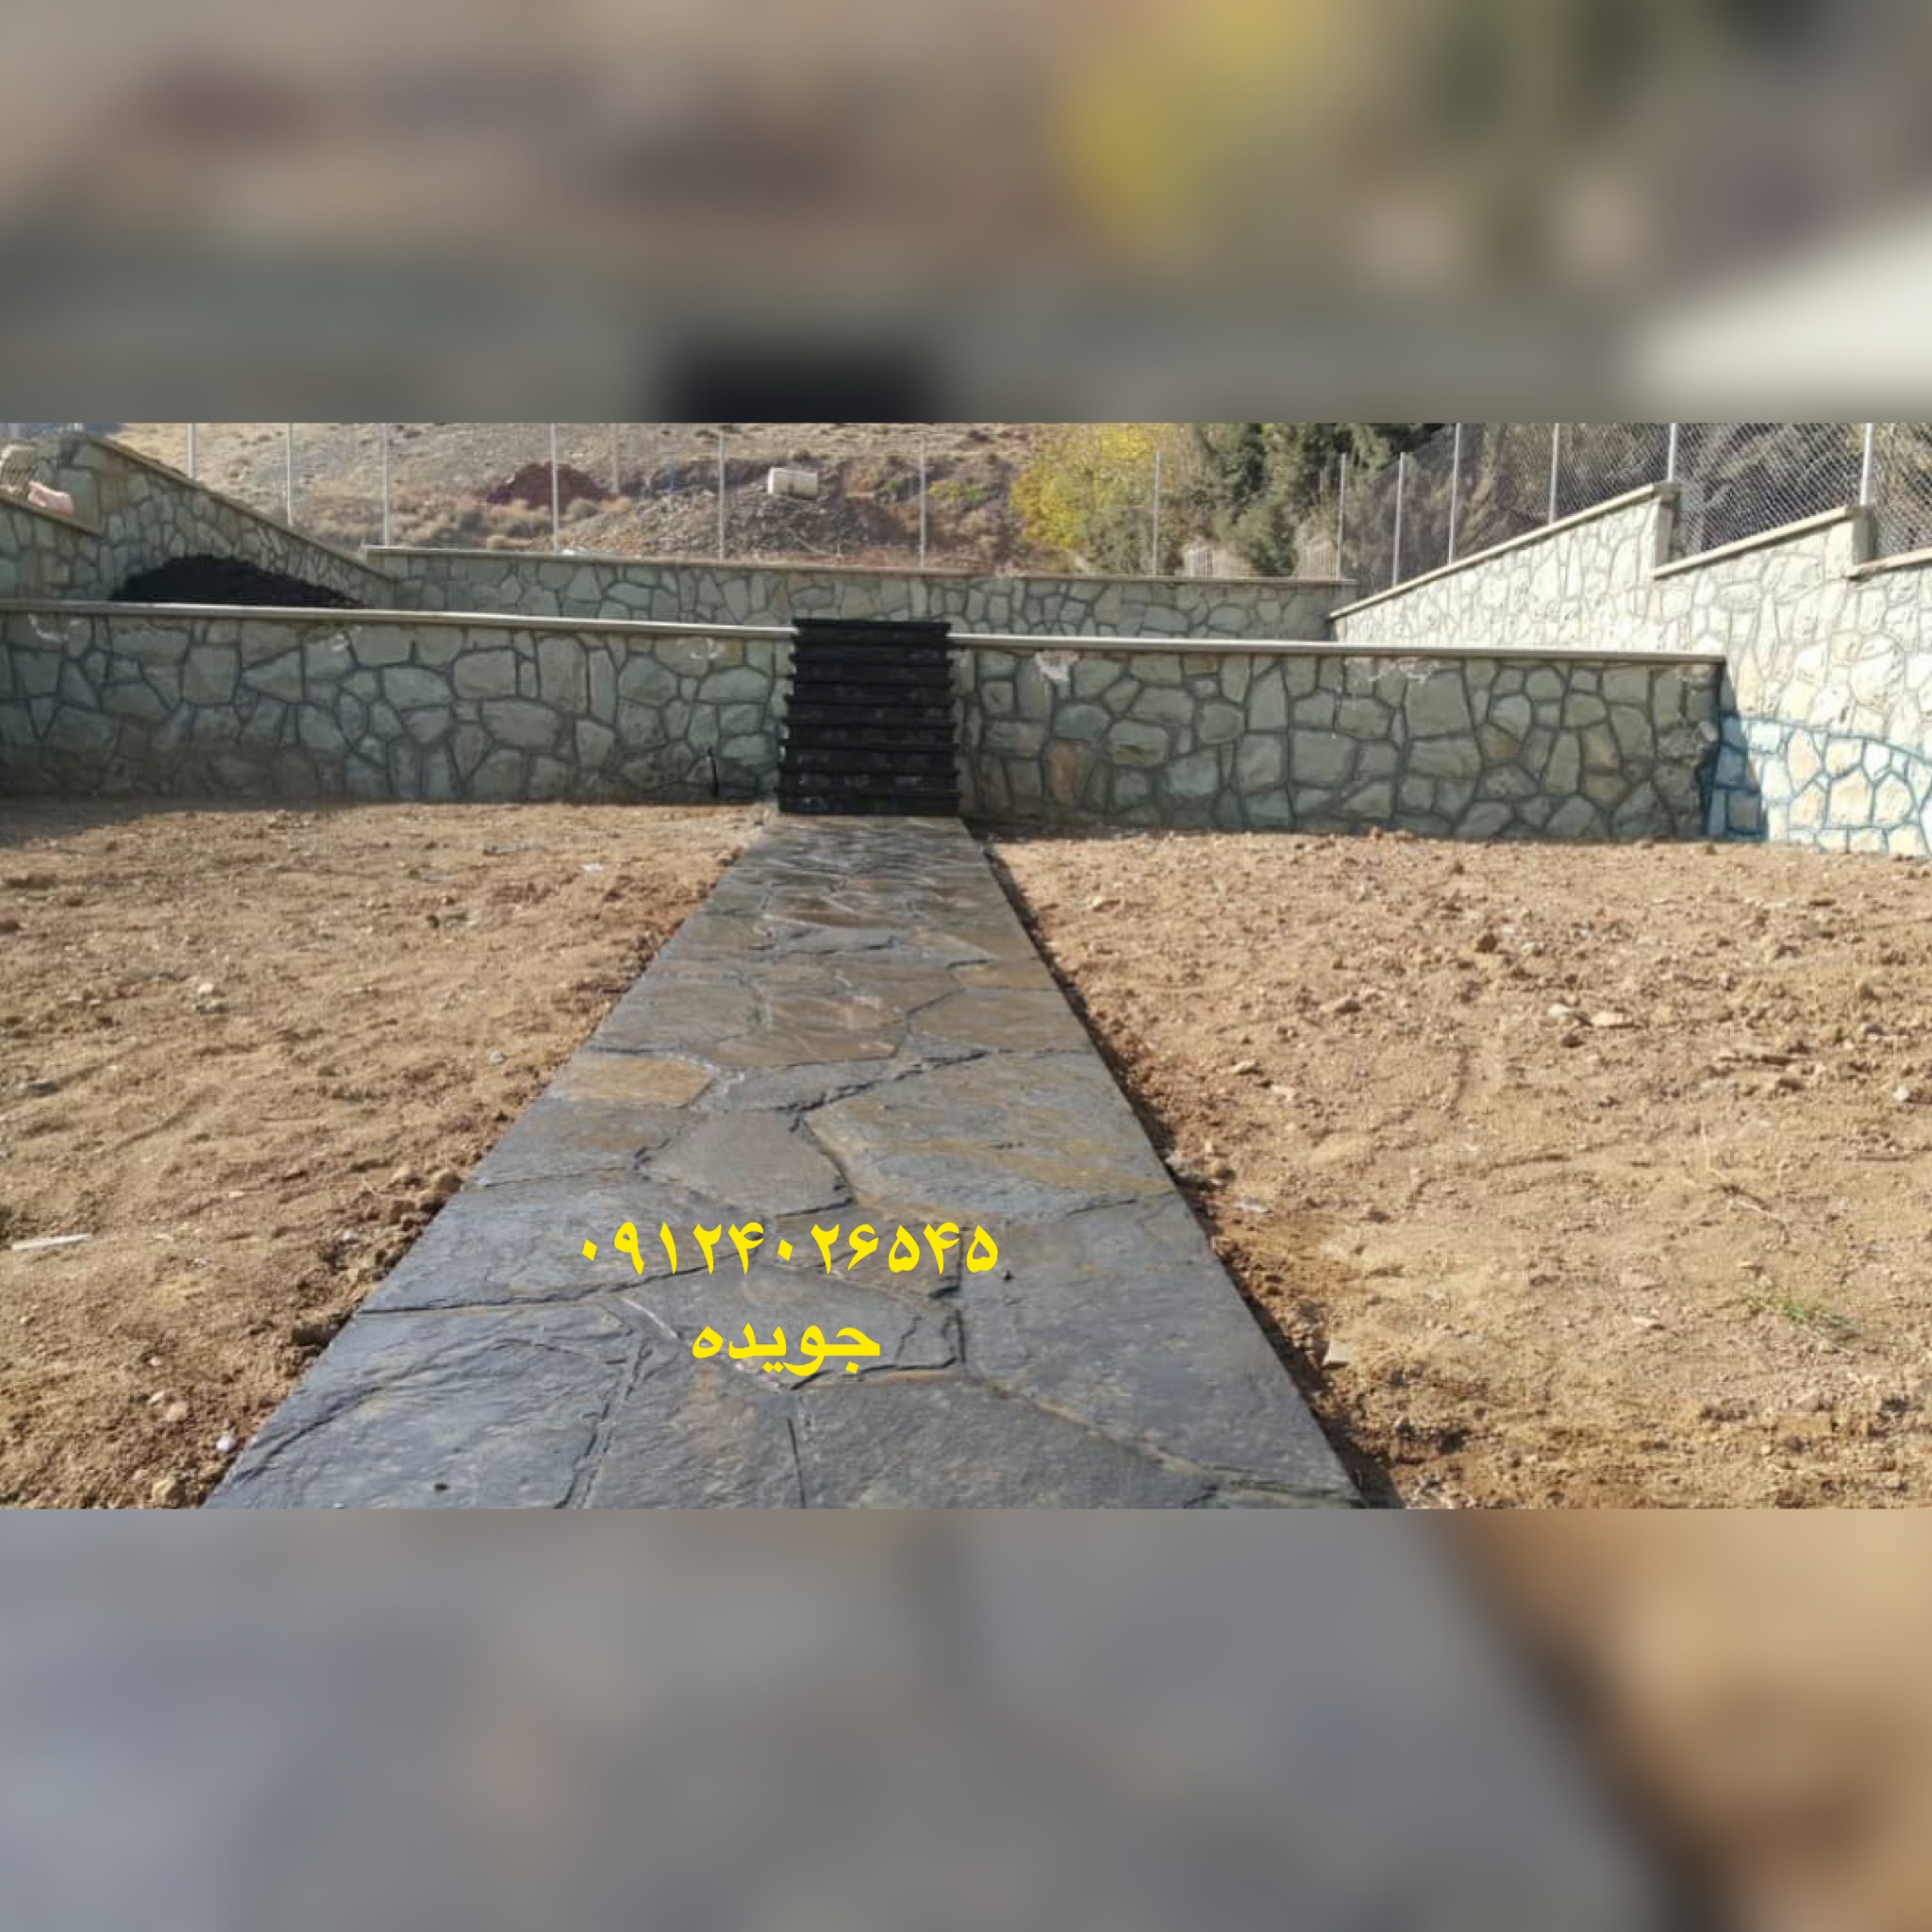 نصب سنگ لاشه برای مسیر های سنگی با سنگ لاشه و سنگ مالون های طبیعی نصب و اجرا شده است 